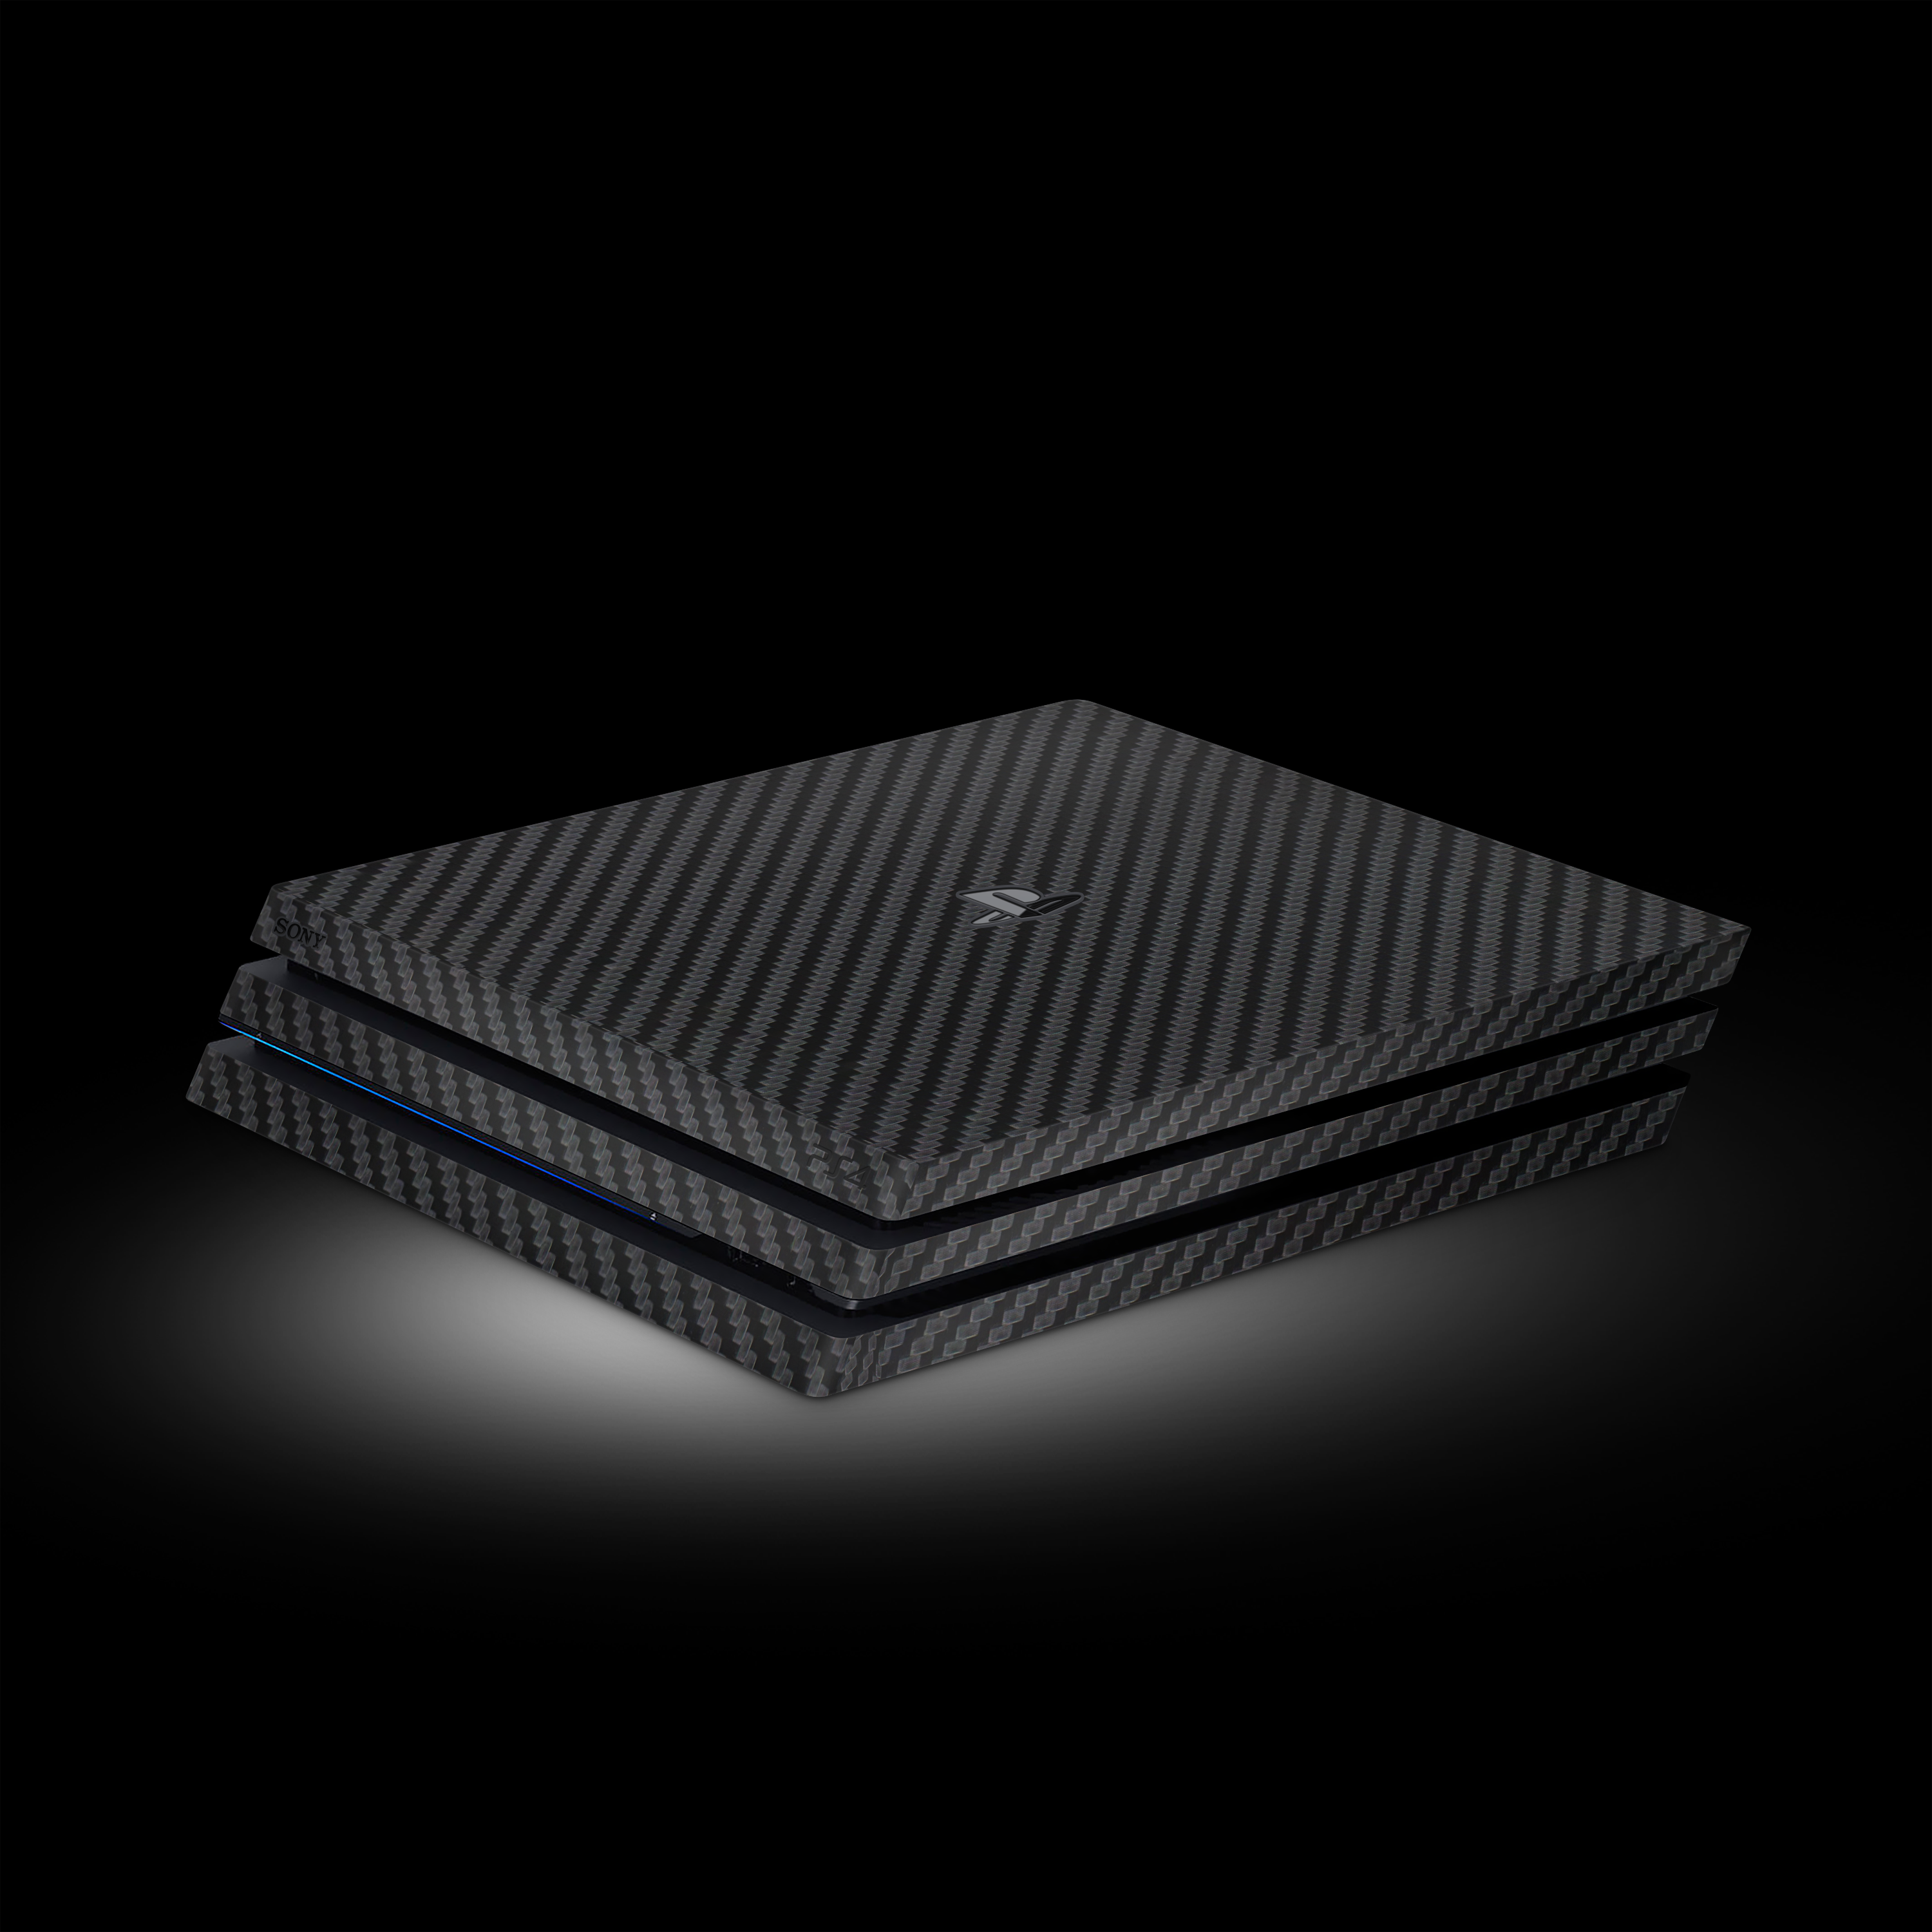 Black Carbon (PlayStation 4 Pro Skin)